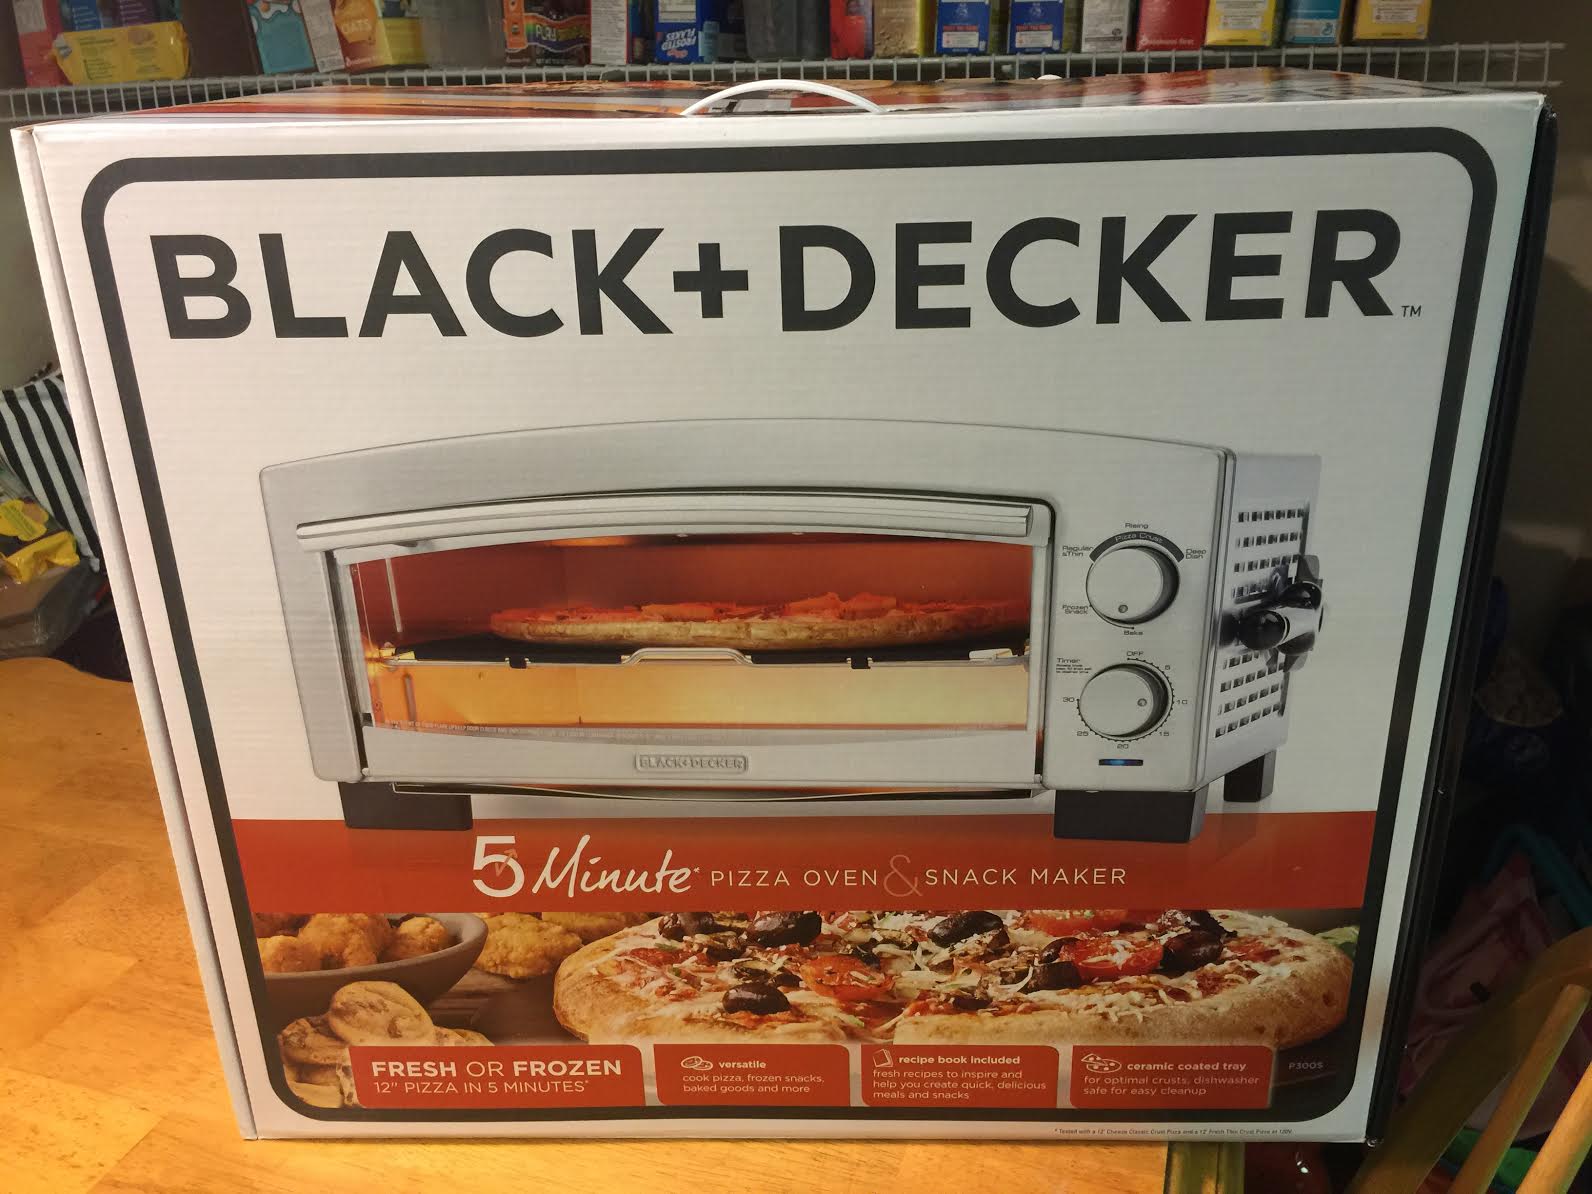 #BlackAndDecker #kitchen #foodie #ambassador #ad